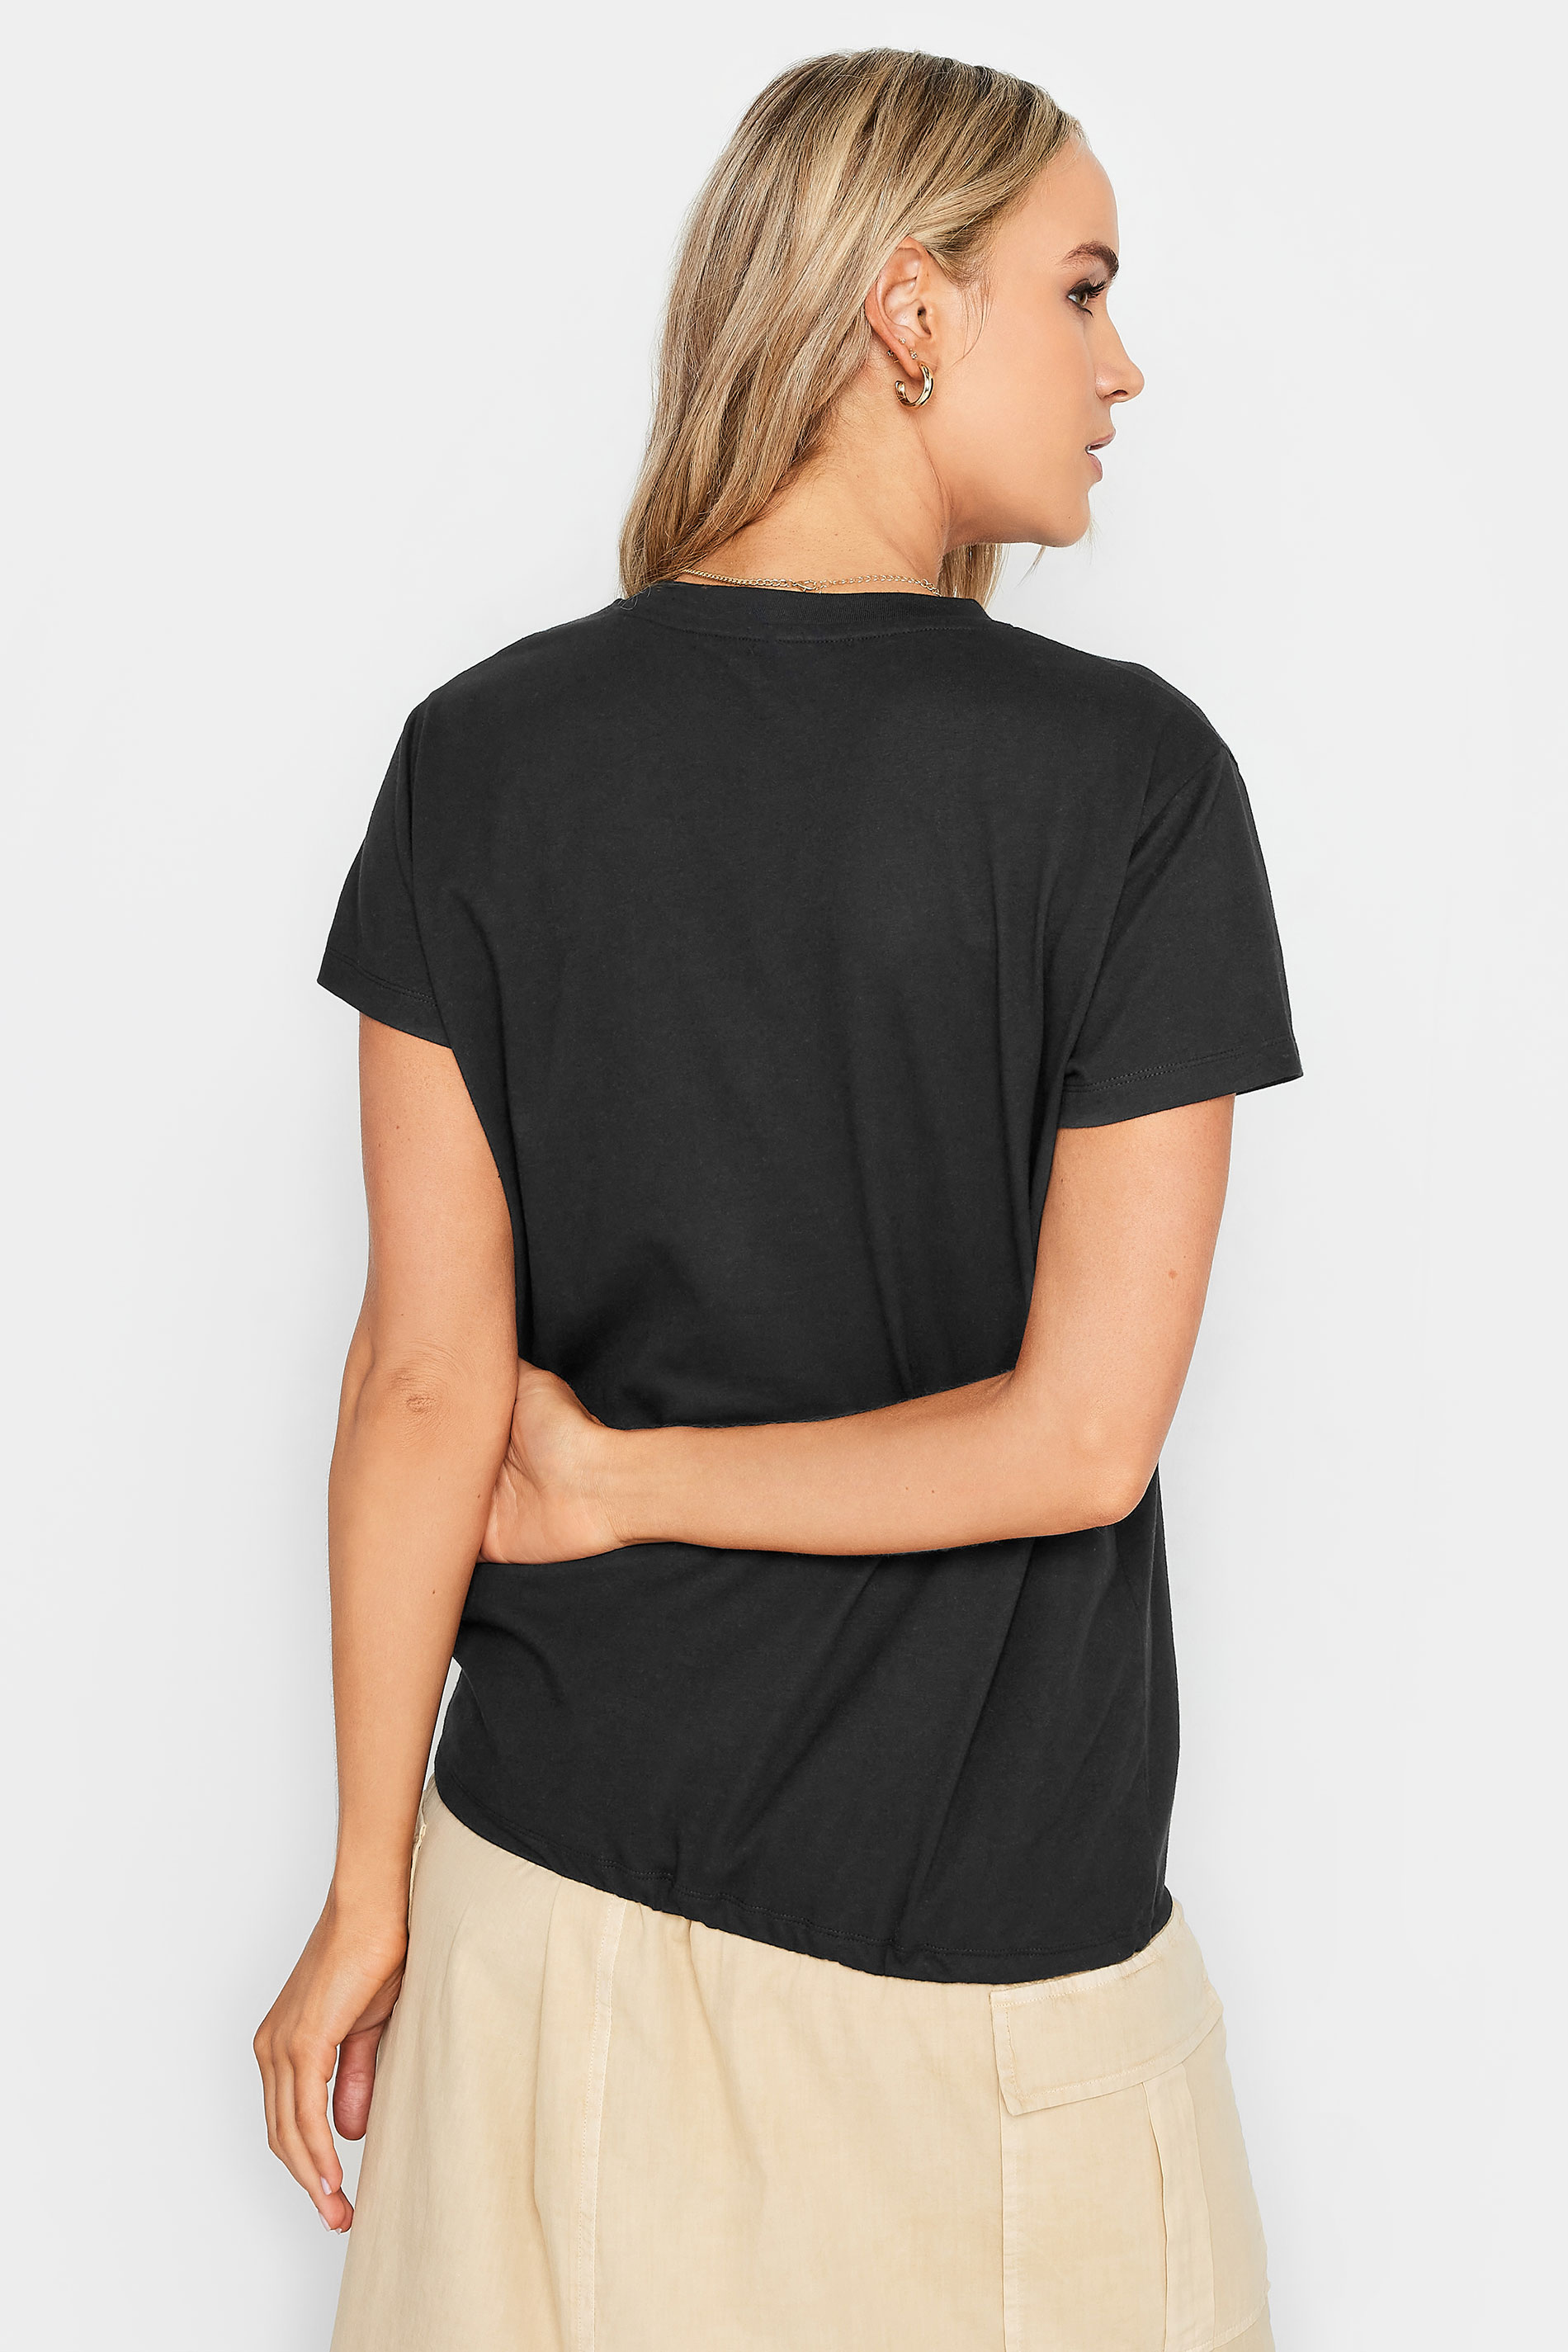 LTS Tall Black Drawstring Hem Cotton T-Shirt | Long Tall Sally 3